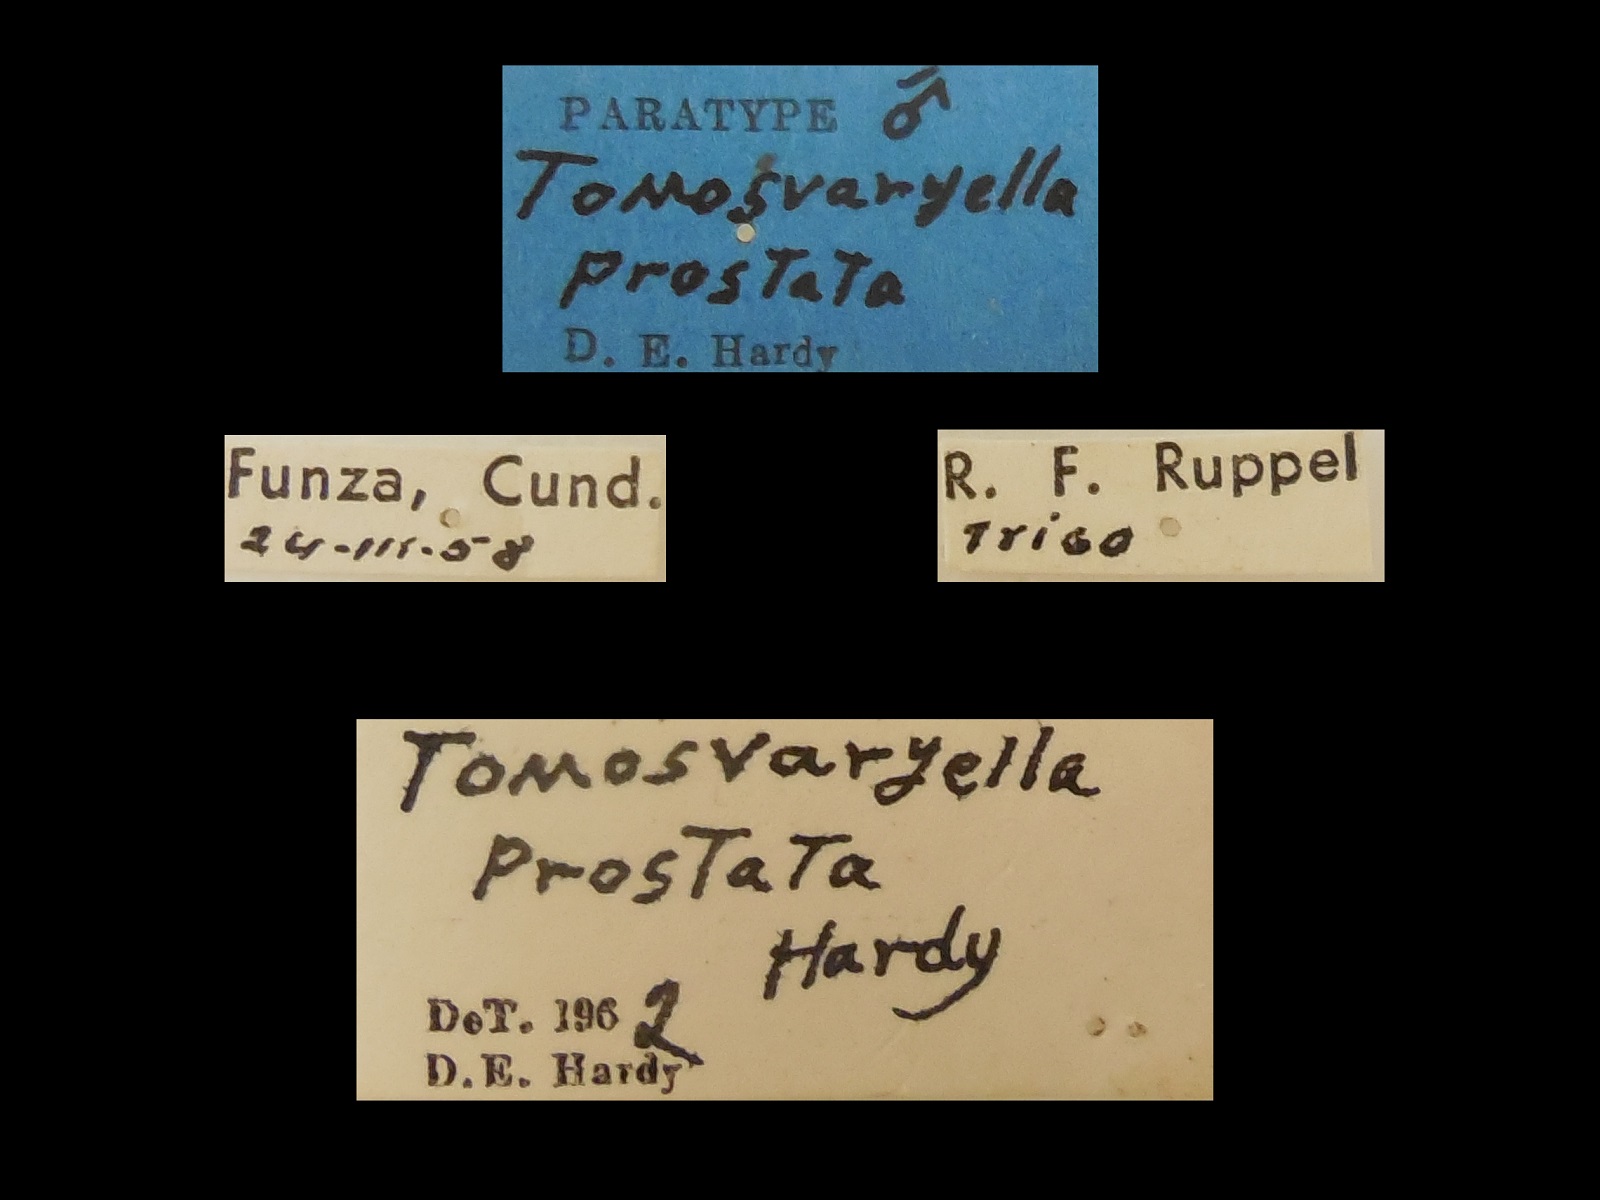 Tomosvaryella prostata Hardy, 1963